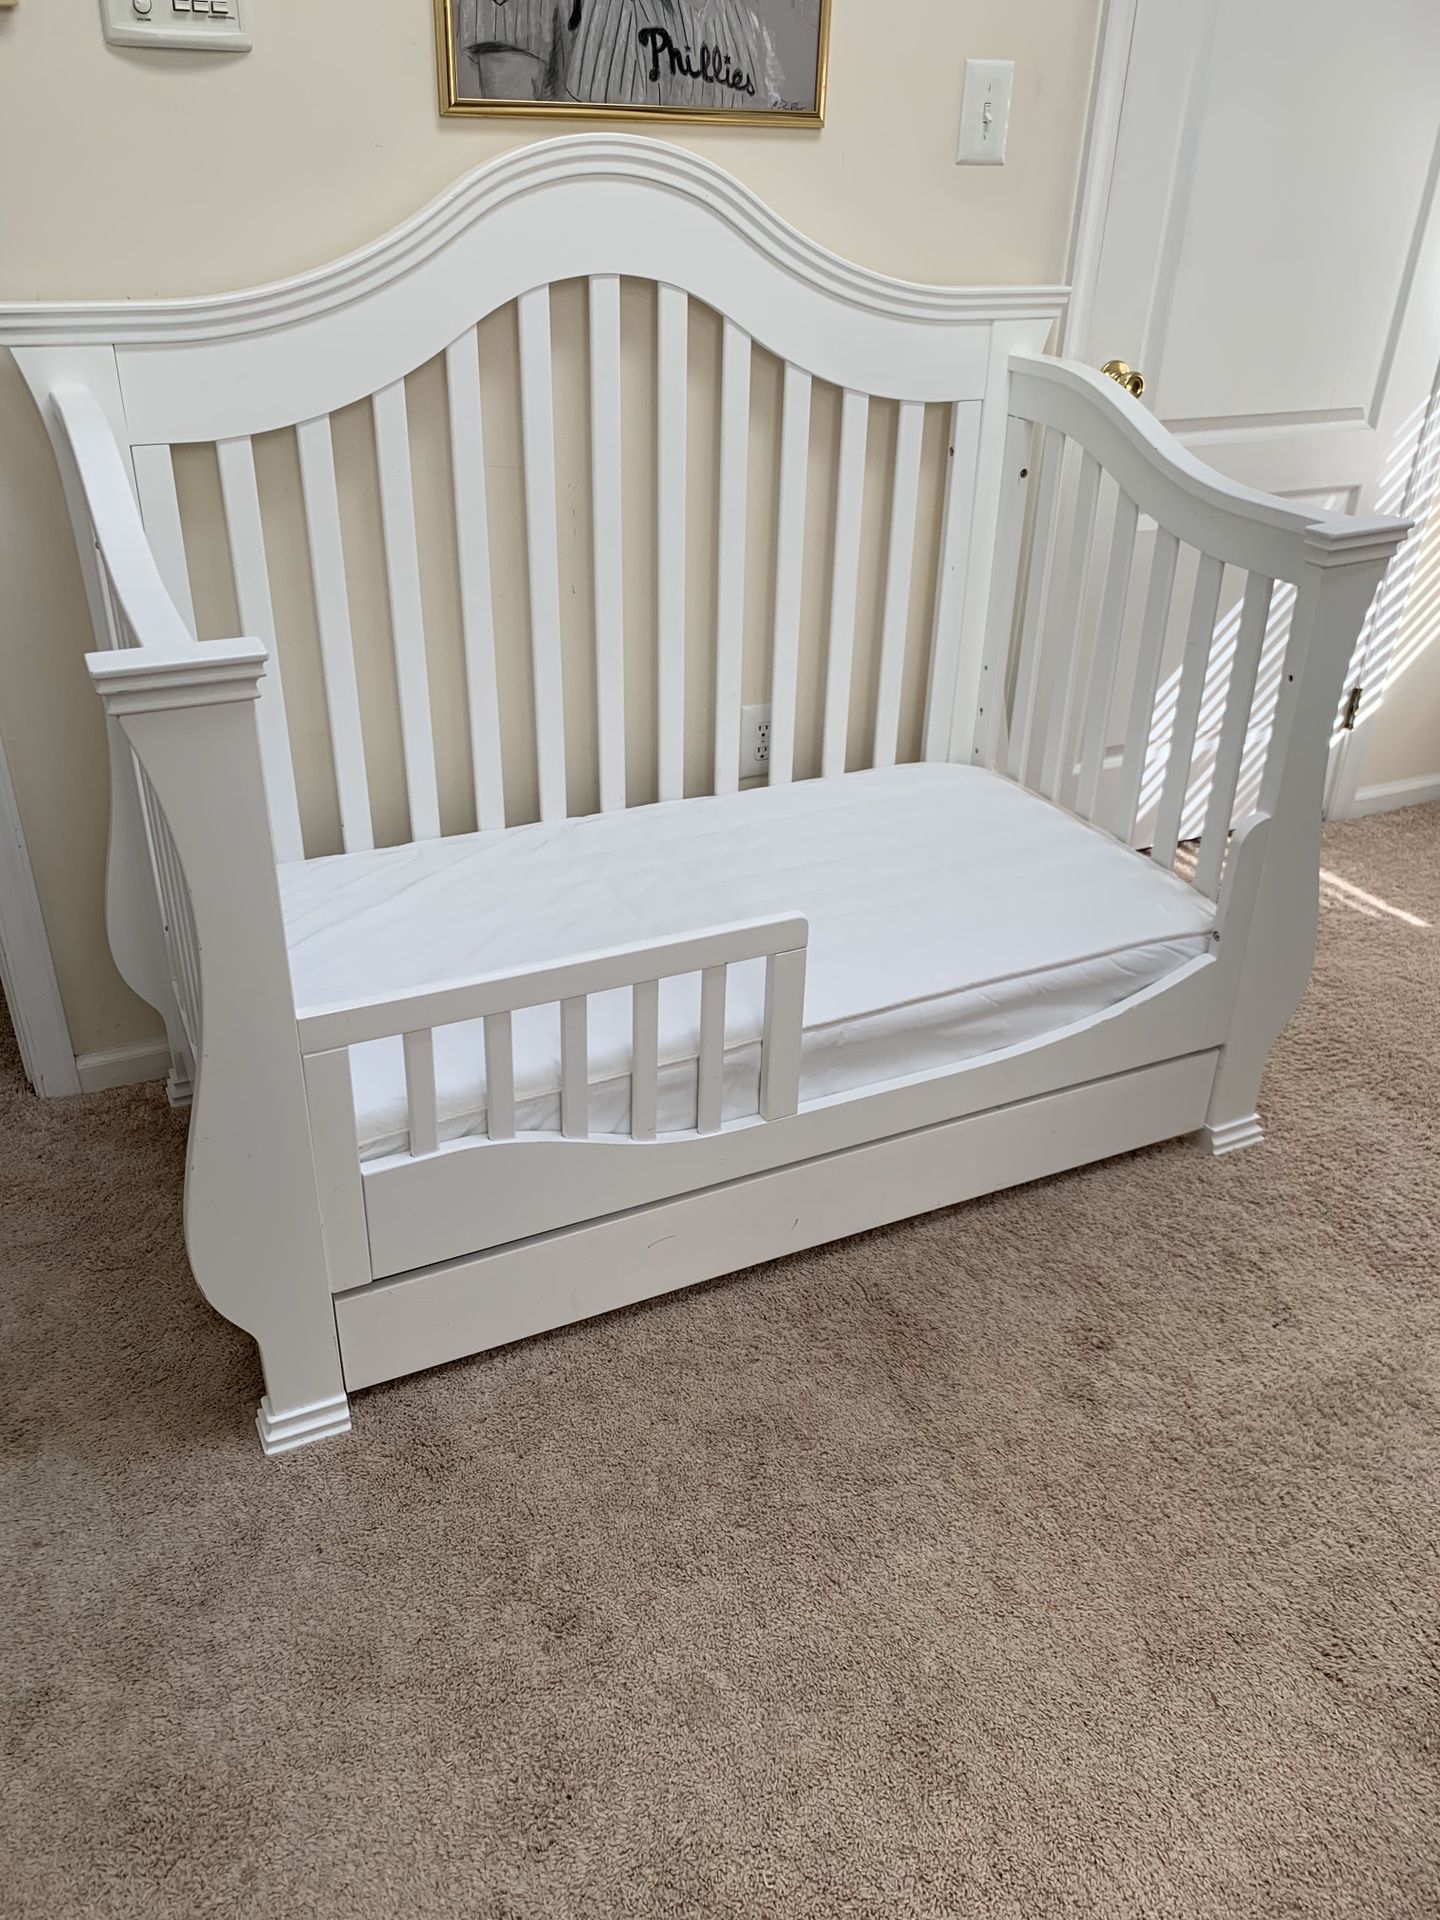 Crib furniture